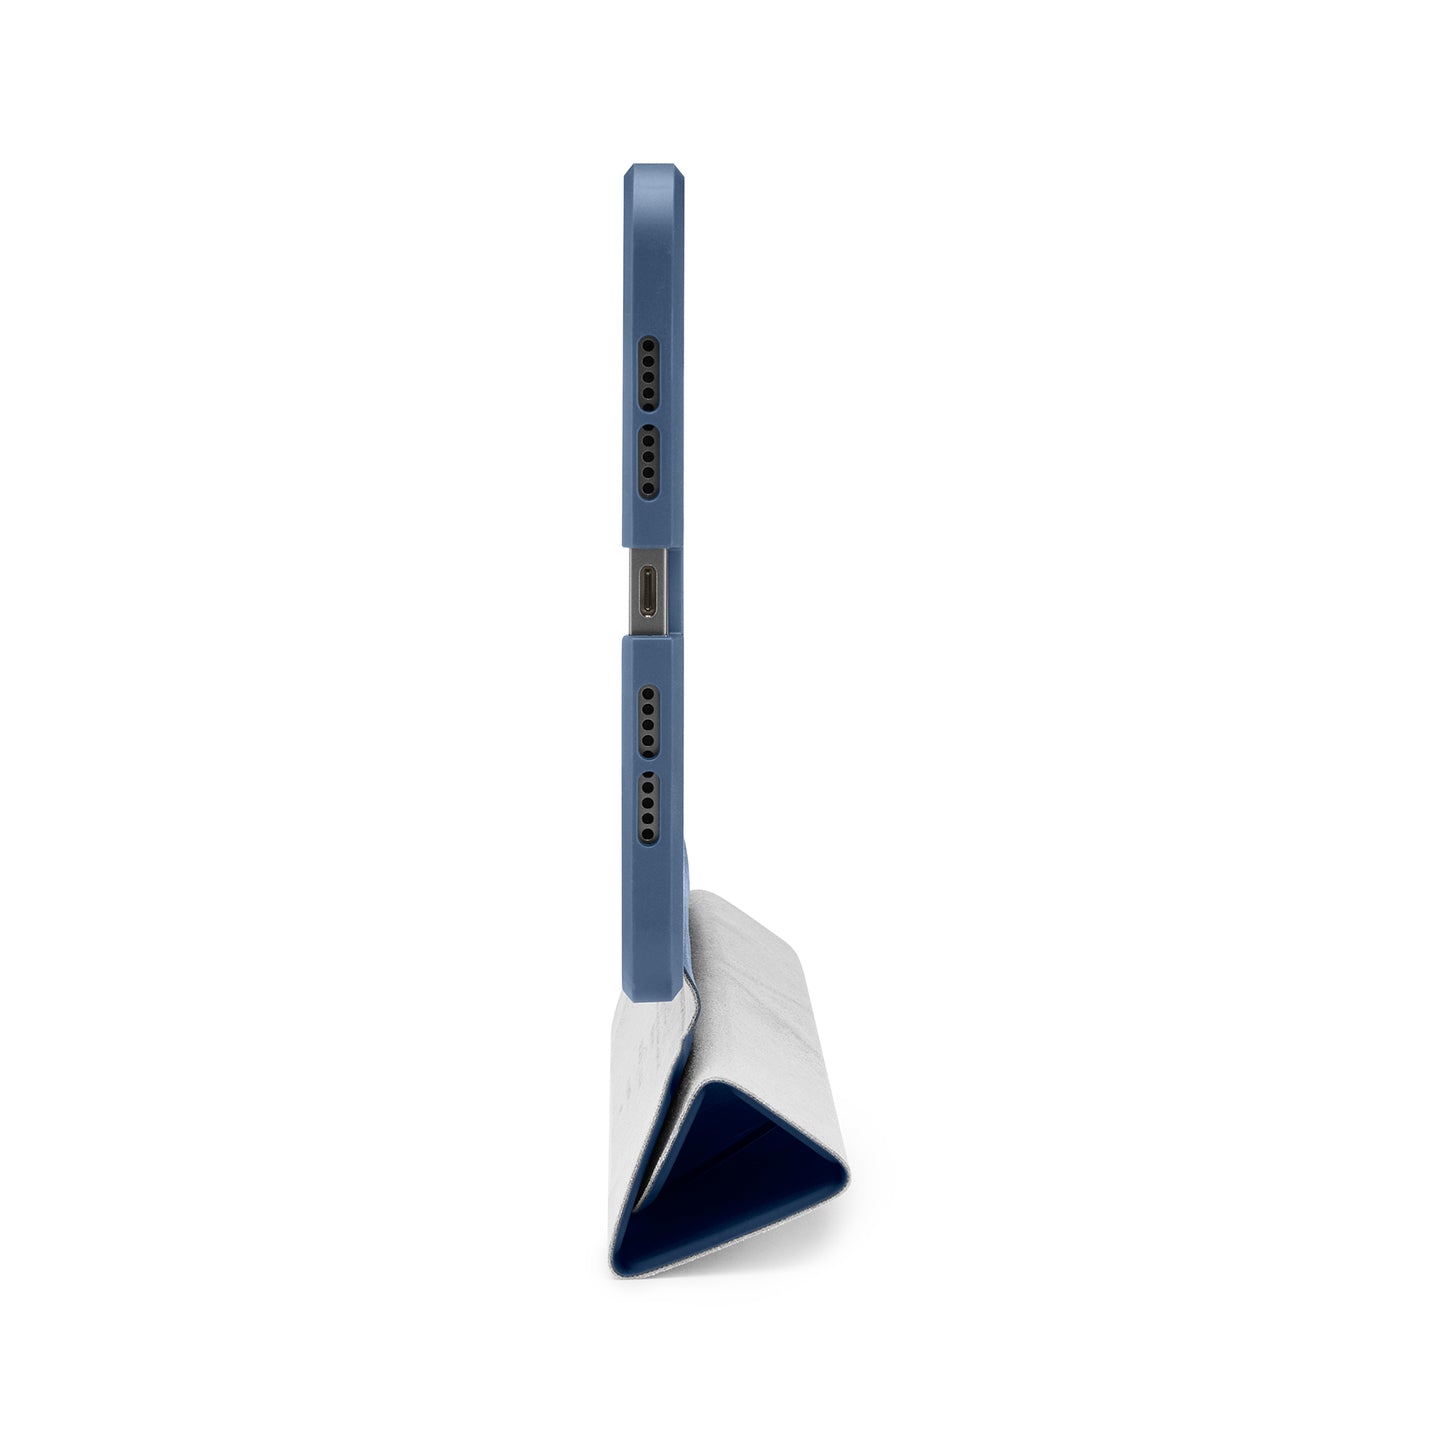 PIPETTO Origami No.1 Case for iPad Mini 6th Gen (2021) - Navy